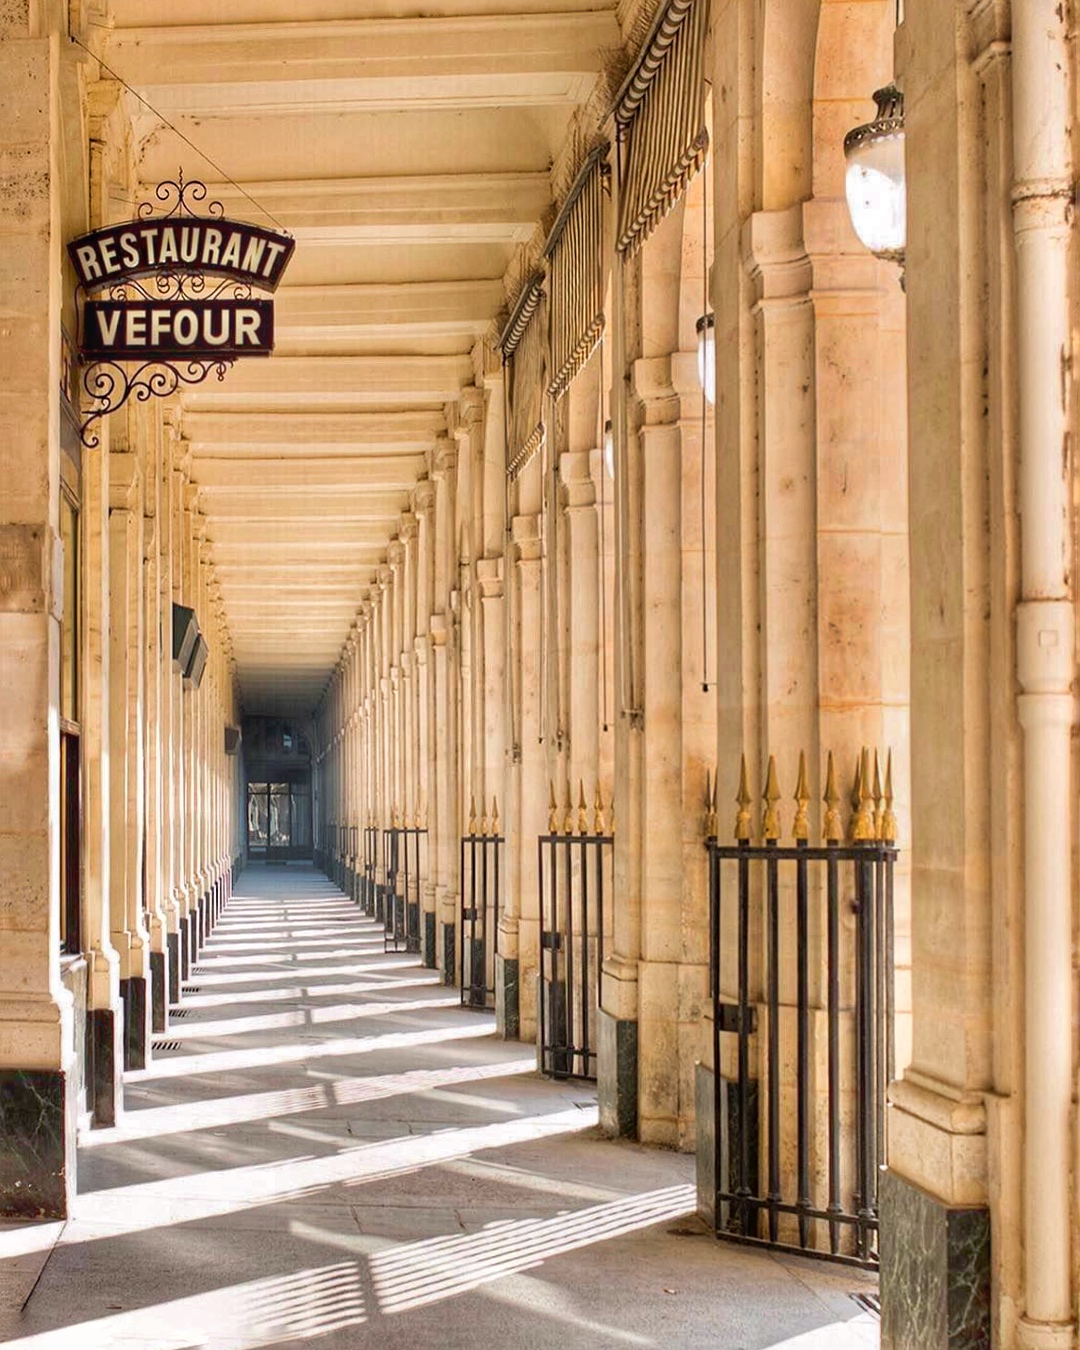 Le resturant du Grand Vefour au Palais Royal, dans la Galerie de Beaujolais